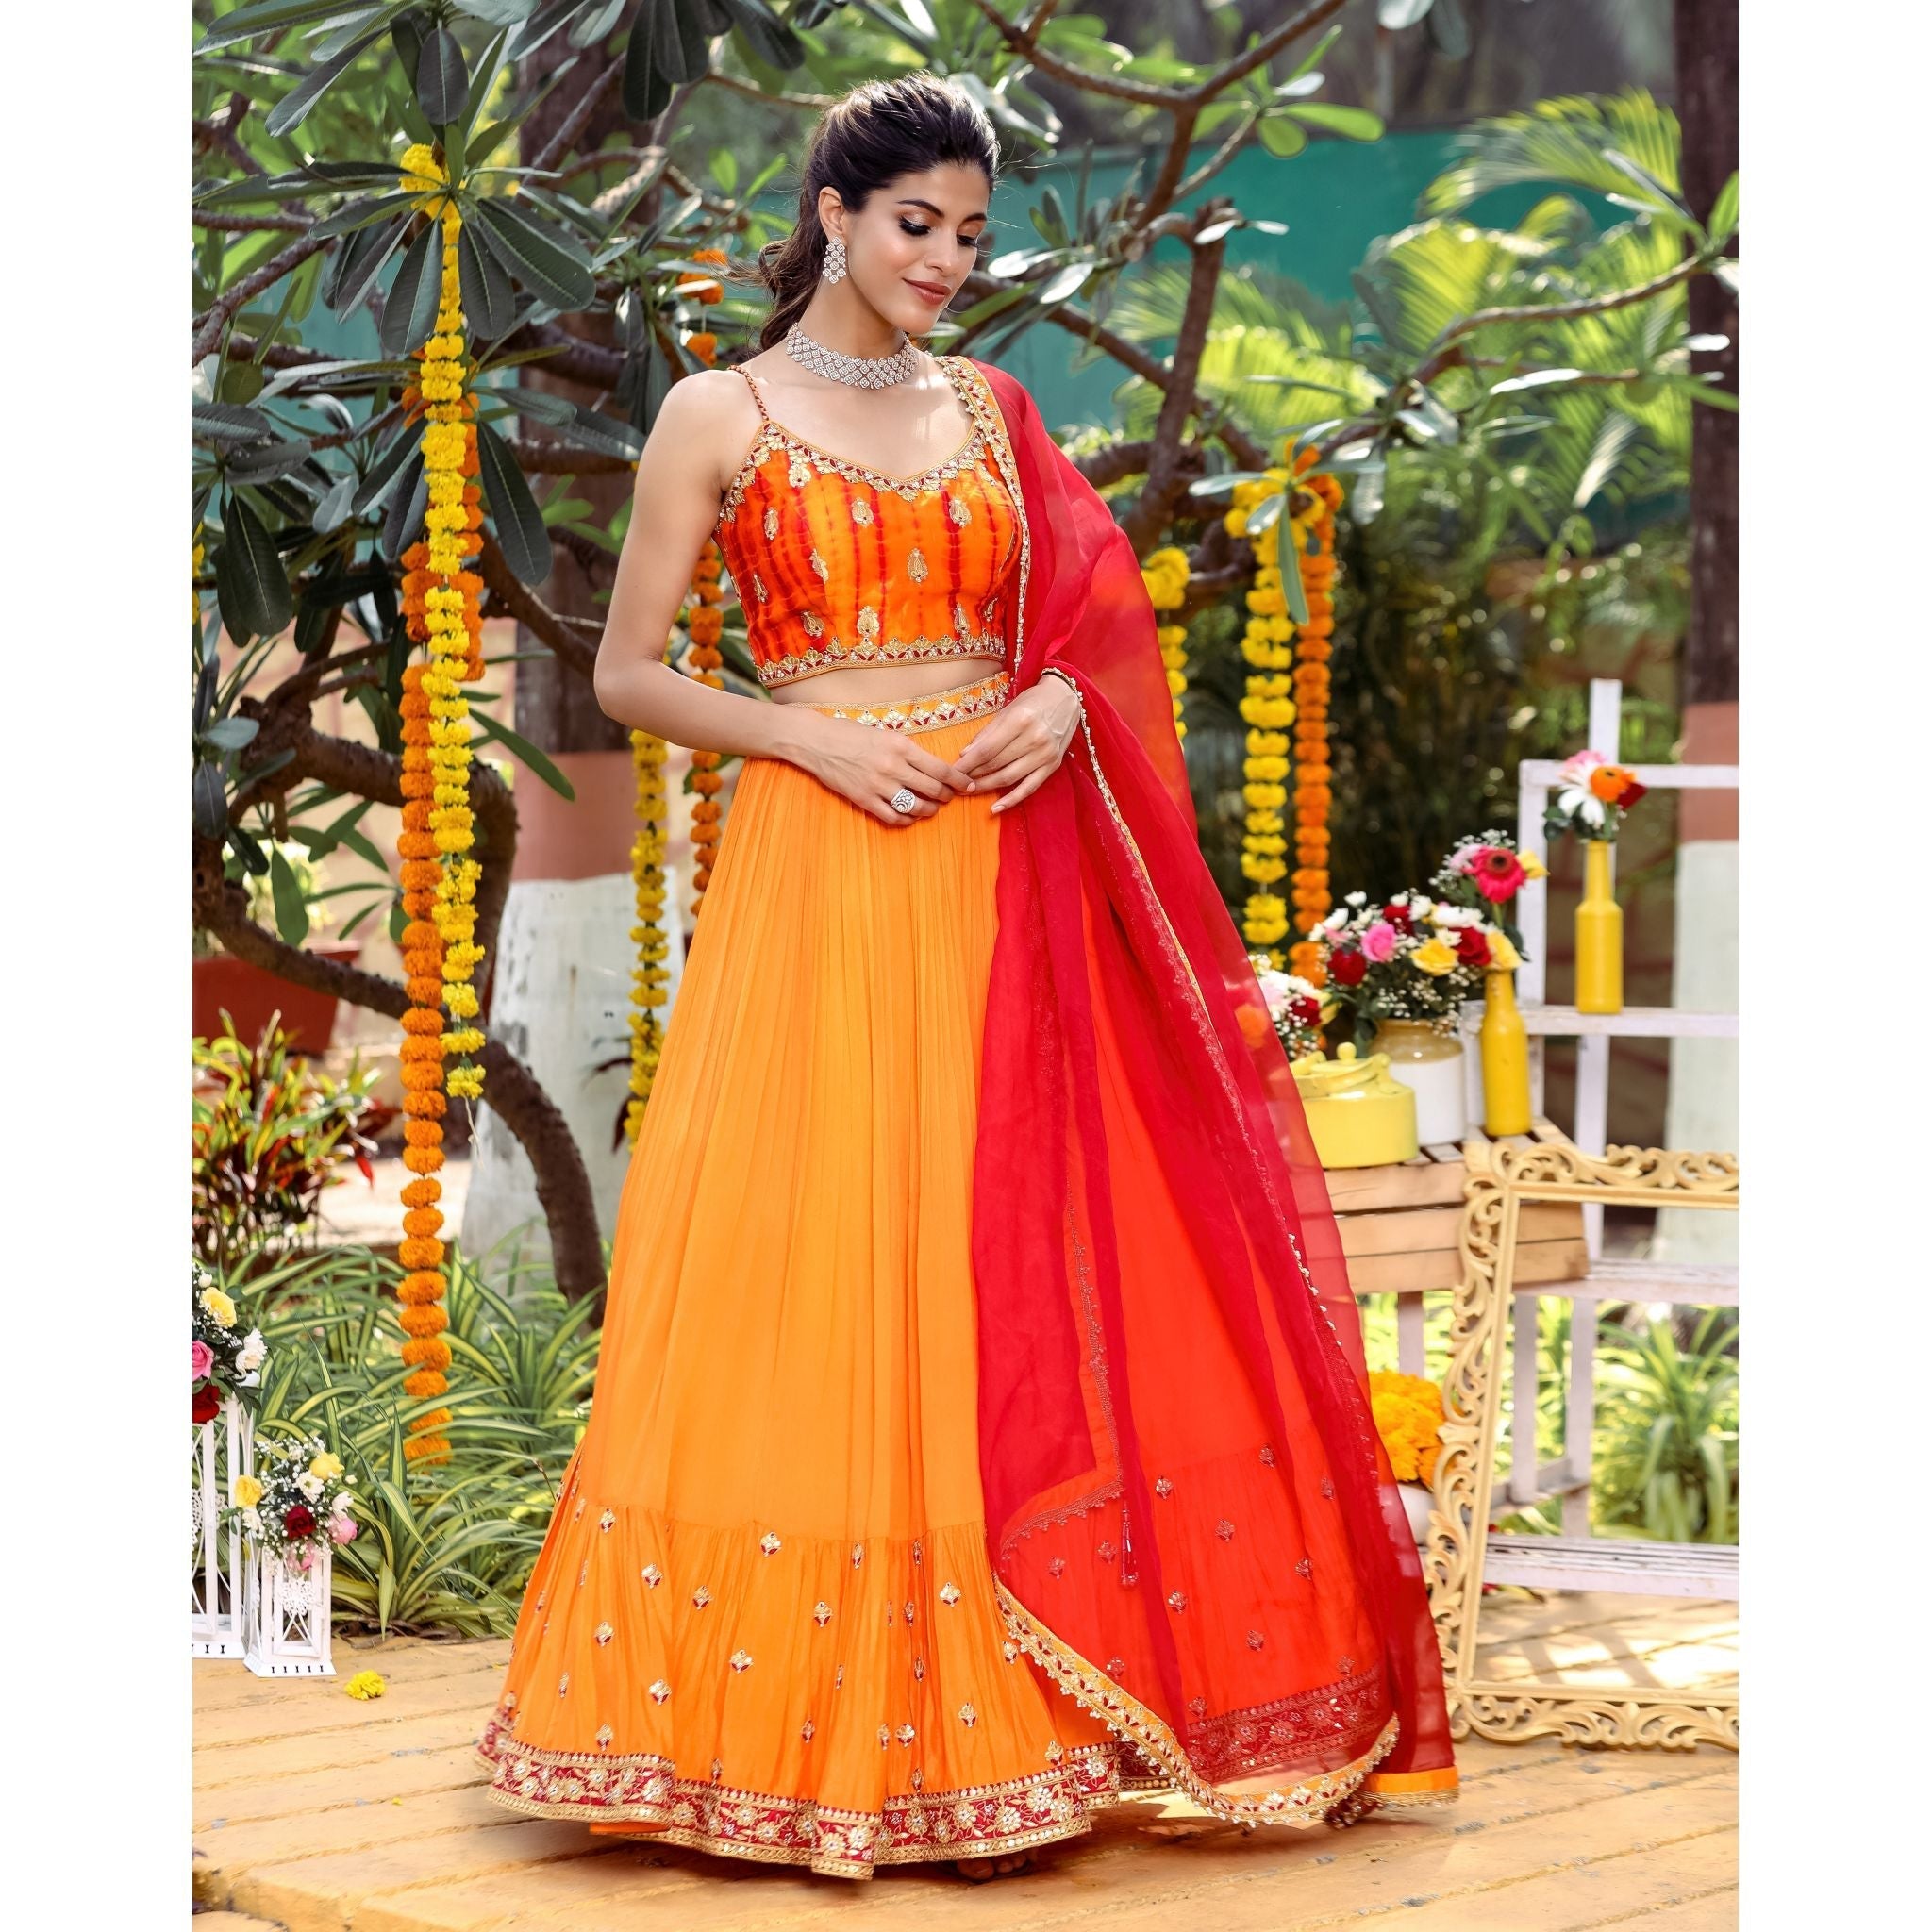 Tangerine Tie-Dye Lehenga Set - Indian Designer Bridal Wedding Outfit